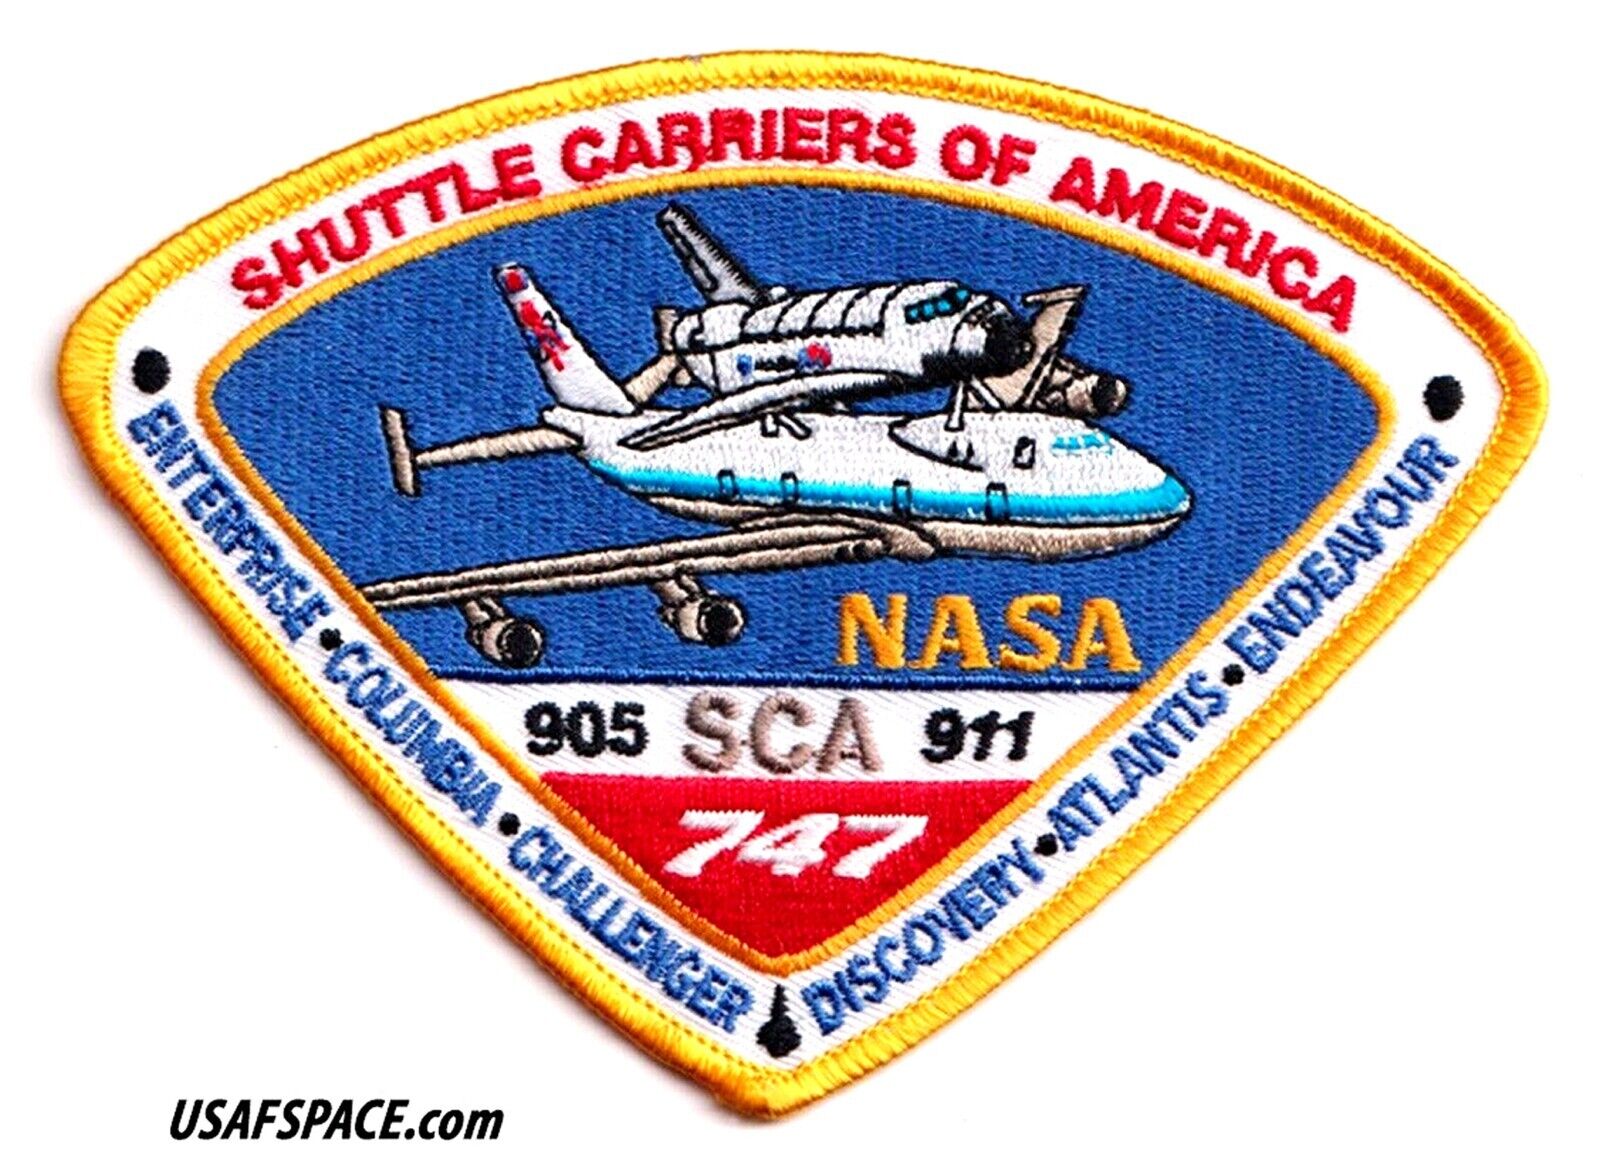 SHUTTLE CARRIERS OF AMERICA-905-SCA-911 747-NASA ORIGINAL A-B Emblem SPACE PATCH